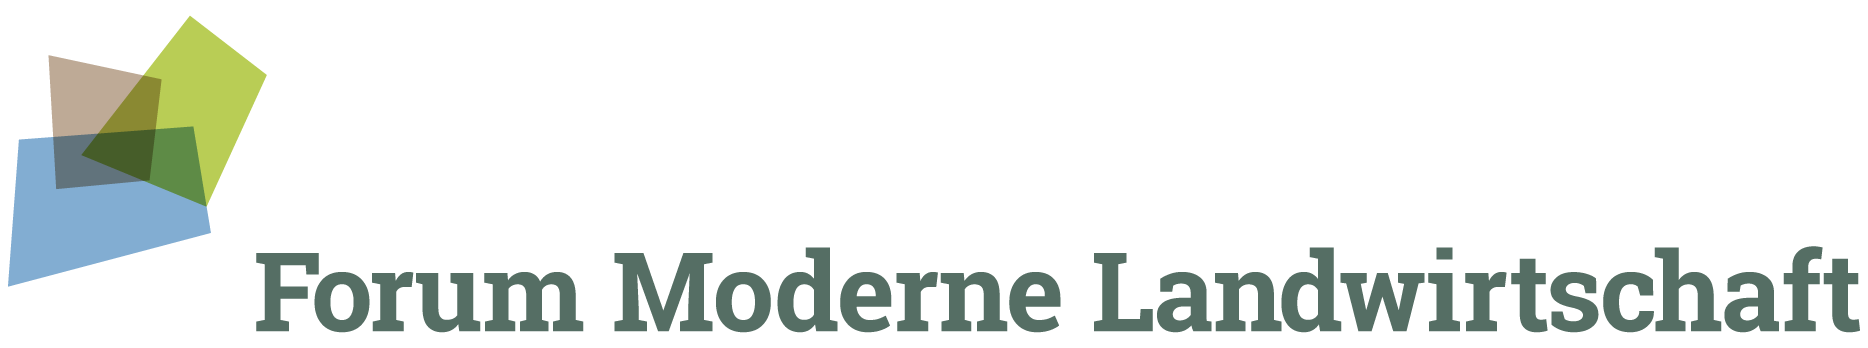 Forum Moderne Landwirtschaft Logo